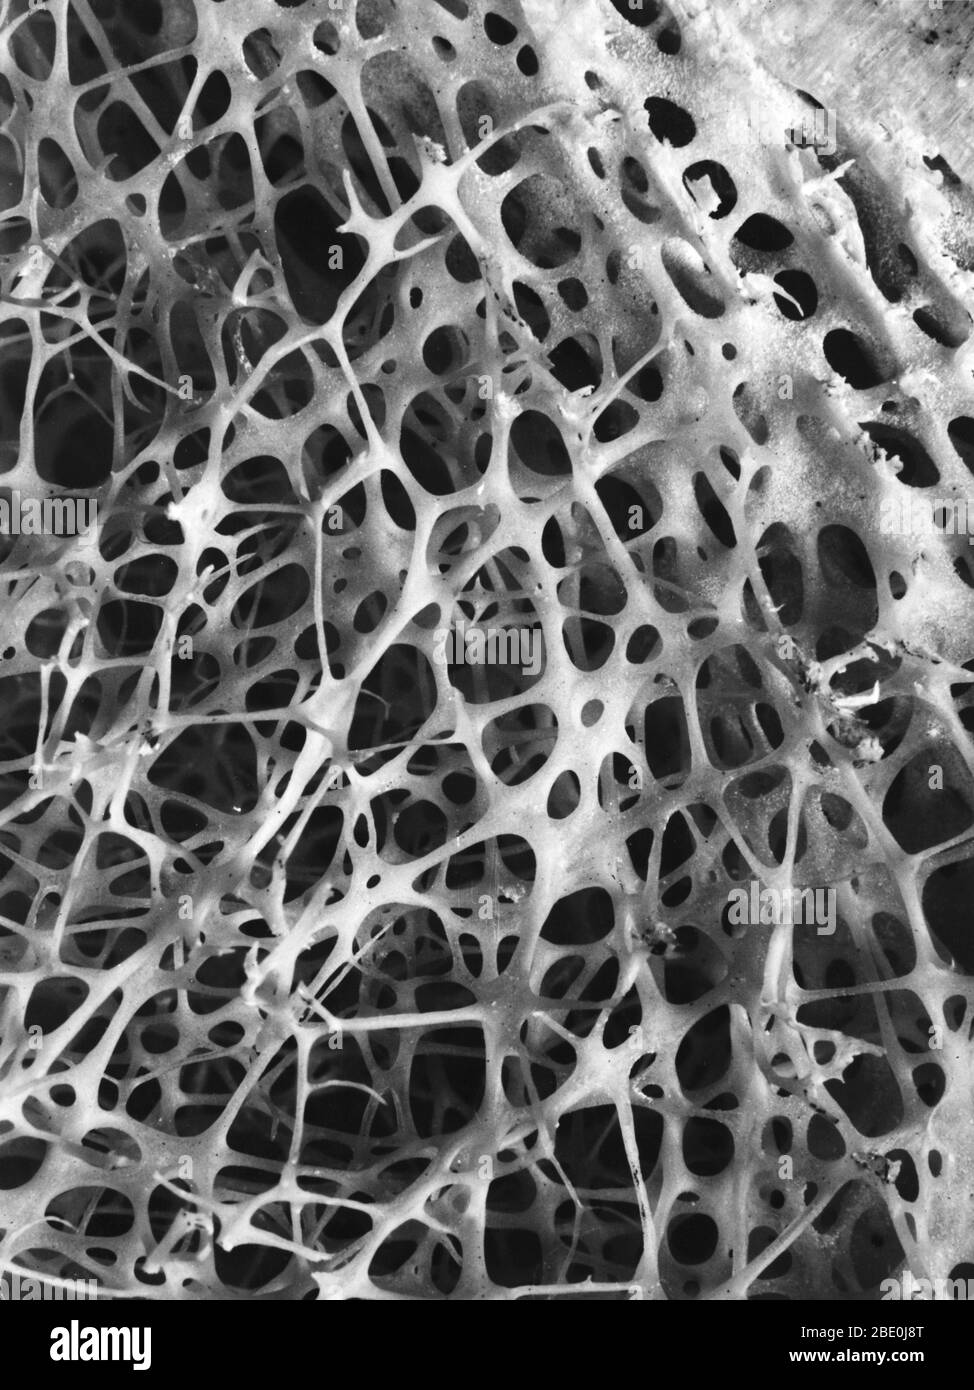 Micrografia elettronica a scansione (SEM) dell'osso spongioso della shin umana. Il tessuto osseo è compatto o tumoso. L'osso compatto di solito costituisce l'esterno dell'osso, mentre l'osso spongioso si trova all'interno. L'osso tumultuoso è caratterizzato da una disposizione a nido d'ape di trabecole. Queste strutture aiutano a fornire sostegno e forza. Gli spazi all'interno di questo tessuto contengono normalmente midollo osseo, una sostanza che forma sangue. Foto Stock